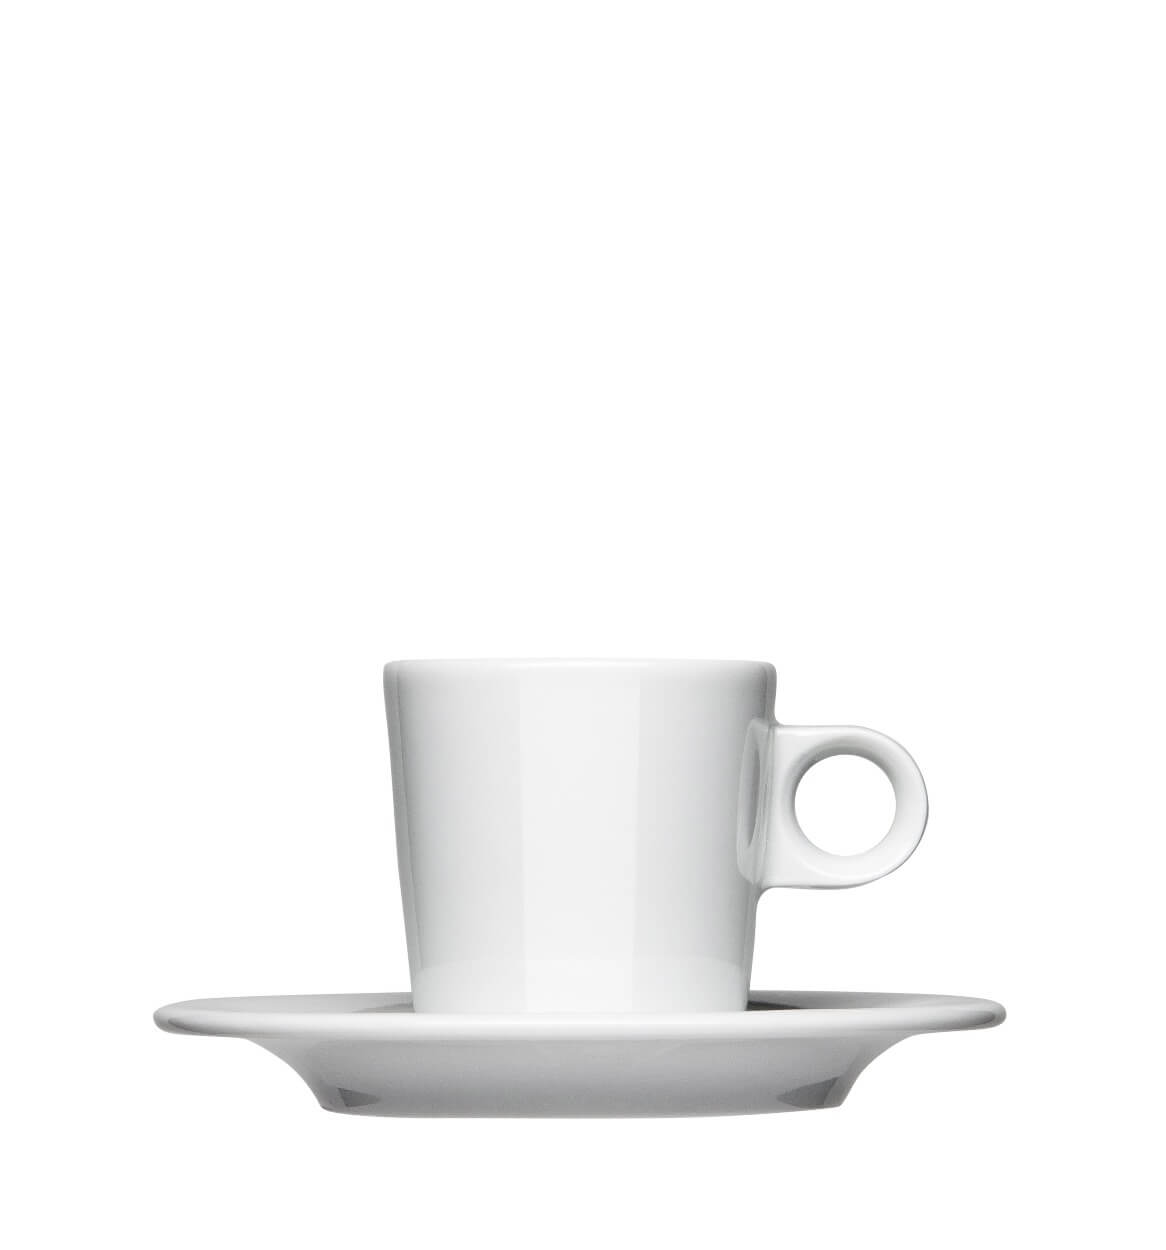 Espressotasse Form 201 zum bedrucken mit einem Logo oder einer Grafik als Werbegeschenk, Werbeartikel oder Werbemittel